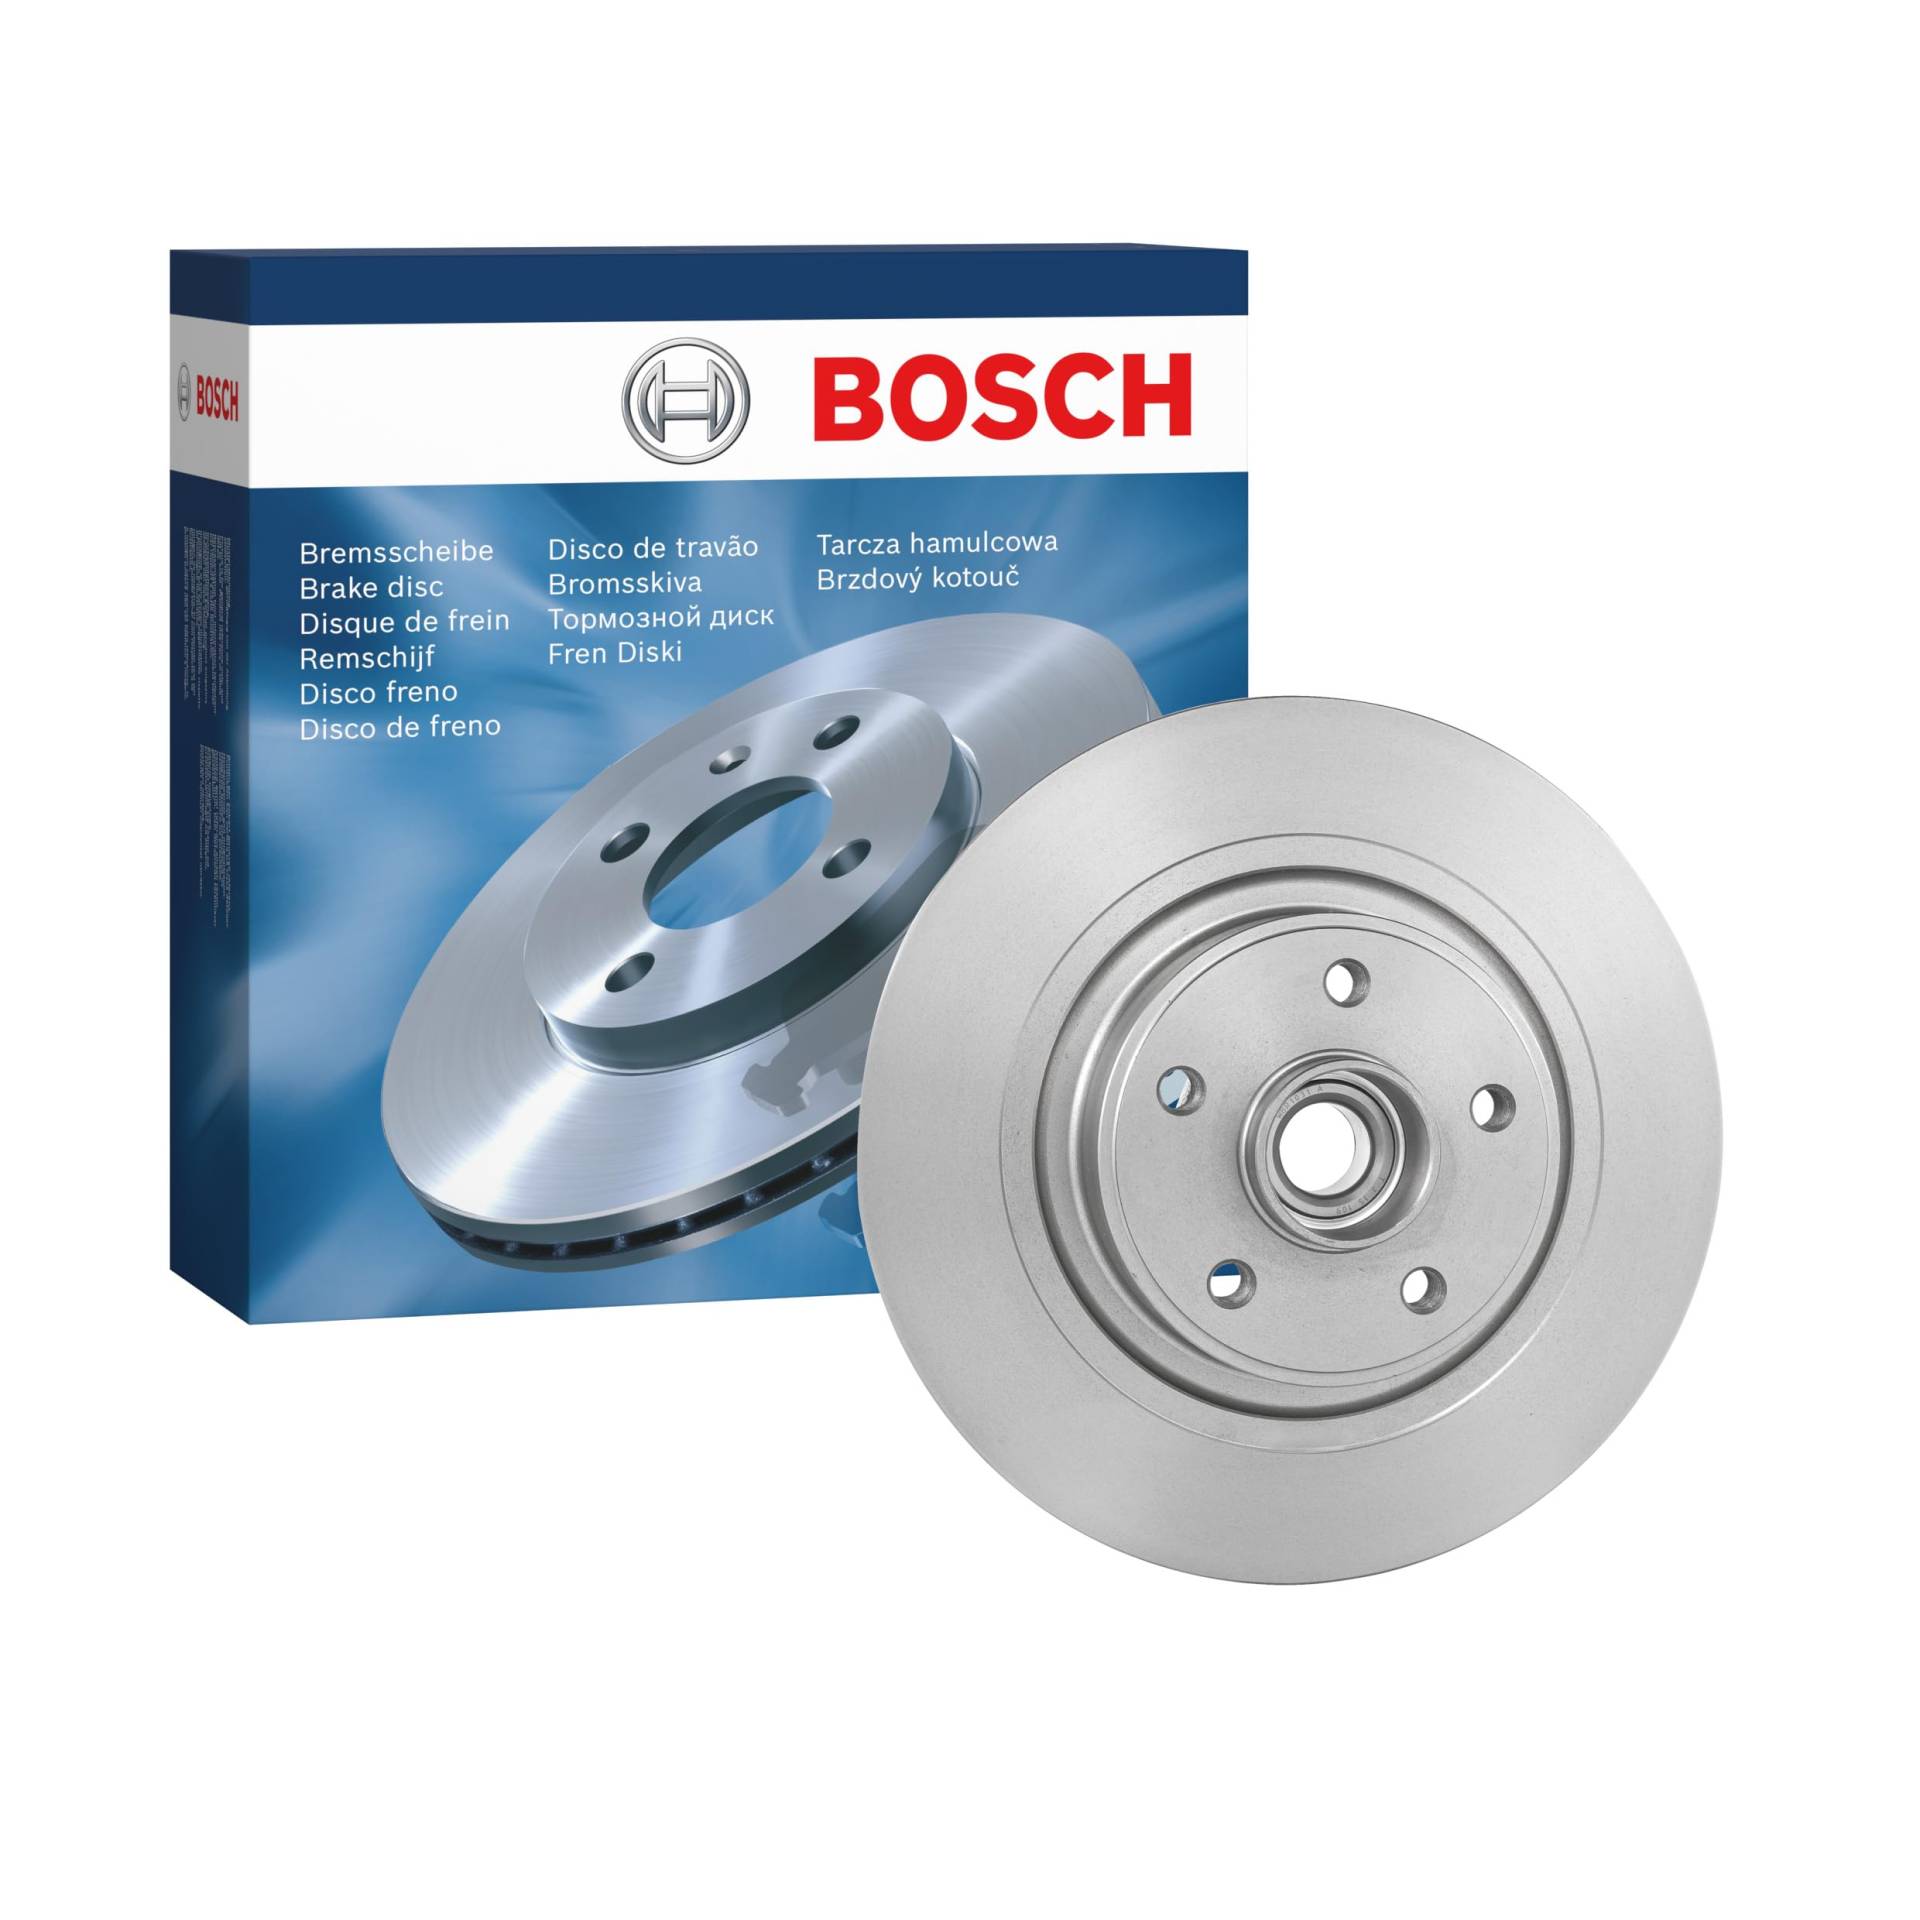 Bosch BD1125 Bremsscheiben mit Radlager - Hinterachse - ECE-R90 Zertifizierung - eine Bremsscheibe von Bosch Automotive